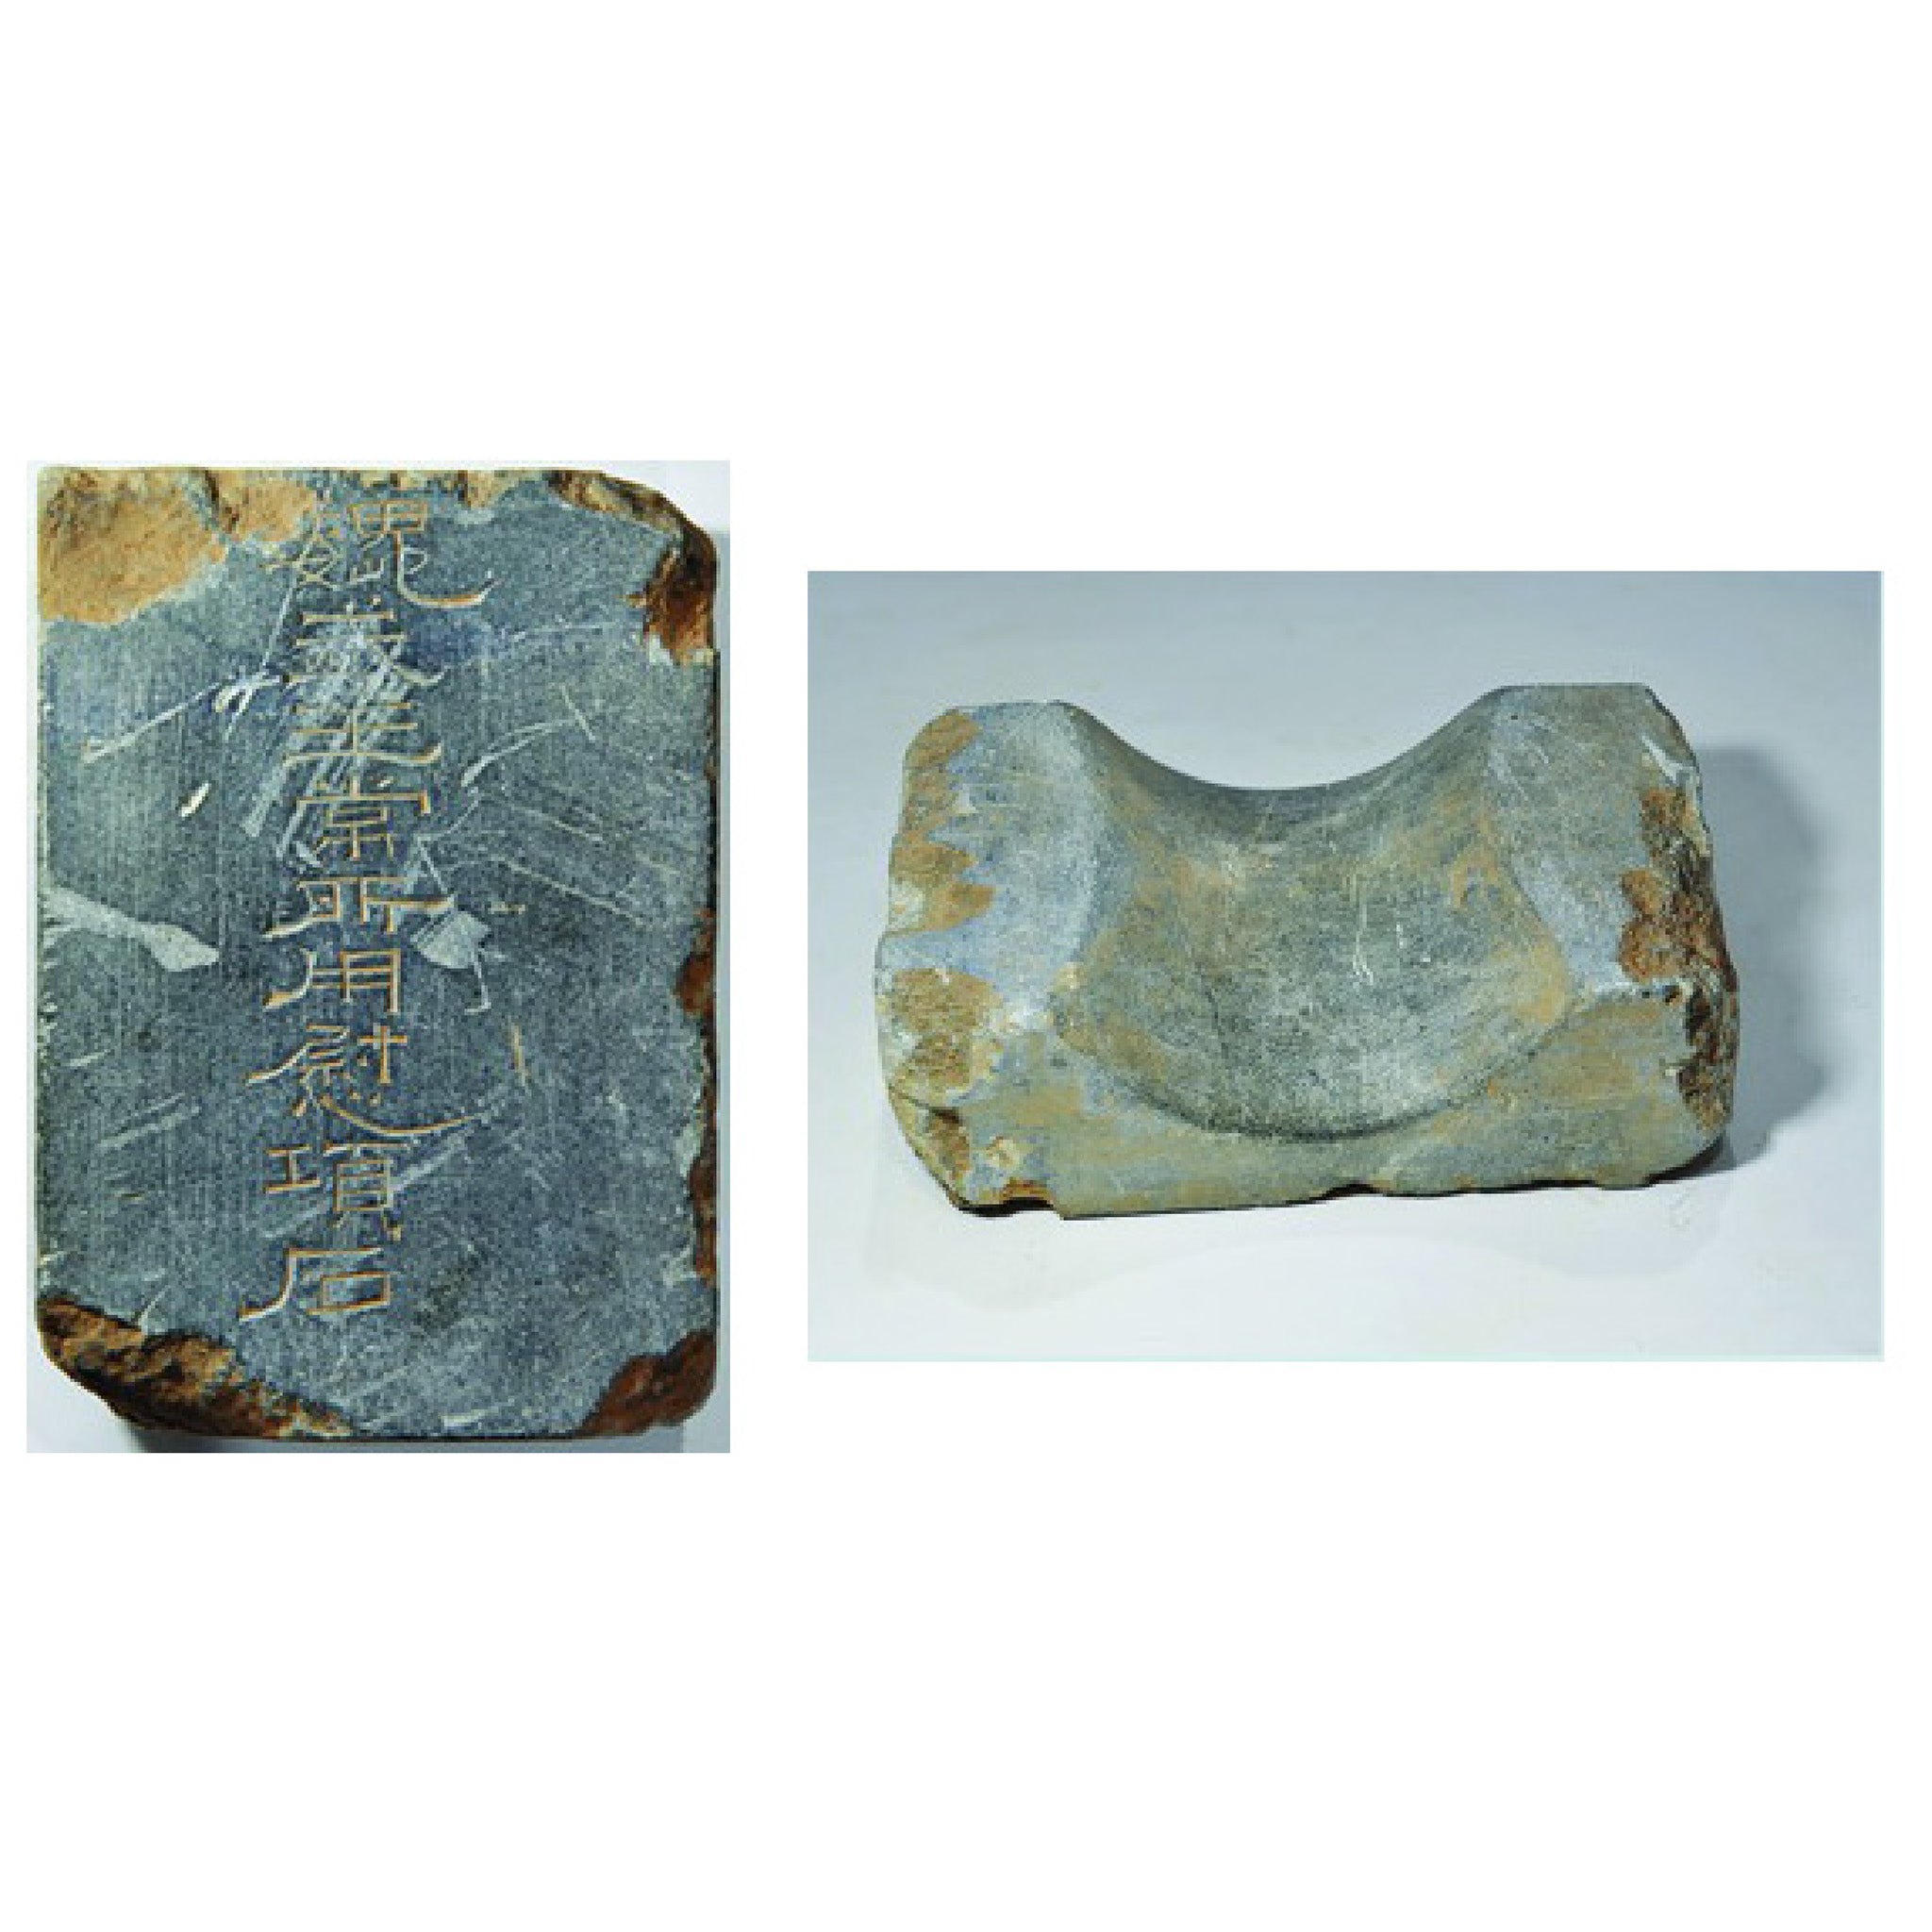 Una almohada de piedra (<i>quzhen yi</i>) con inscripciones, catalogada como parte de los artefactos encontrados en el Mausoleo de Gao de Cao Cao, en el condado de Anyang, provincia de Henan.